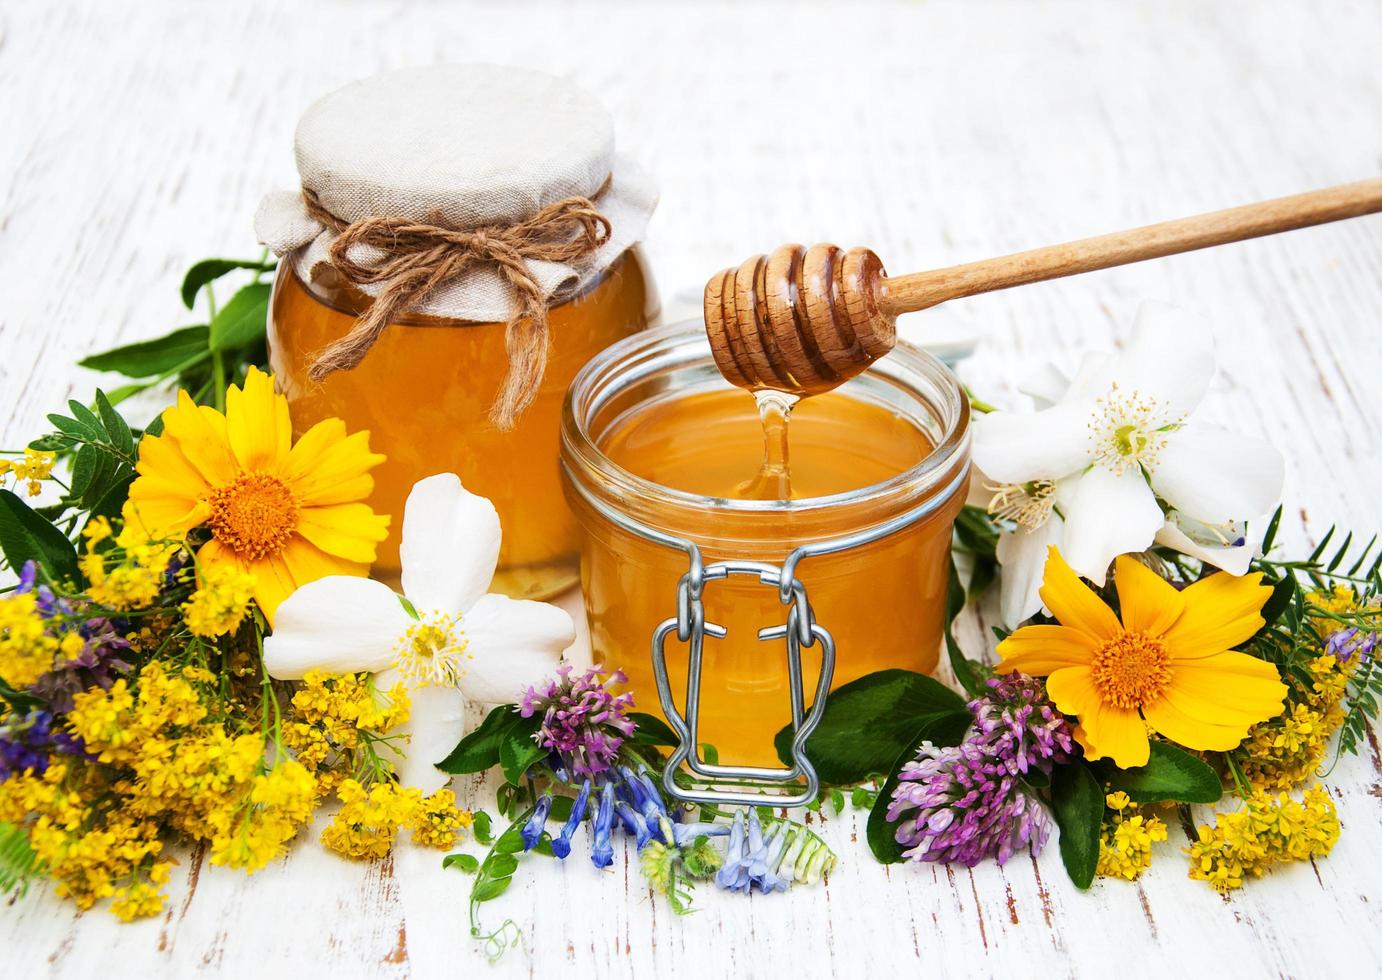 honung och vilda blommor på en träbakgrund foto